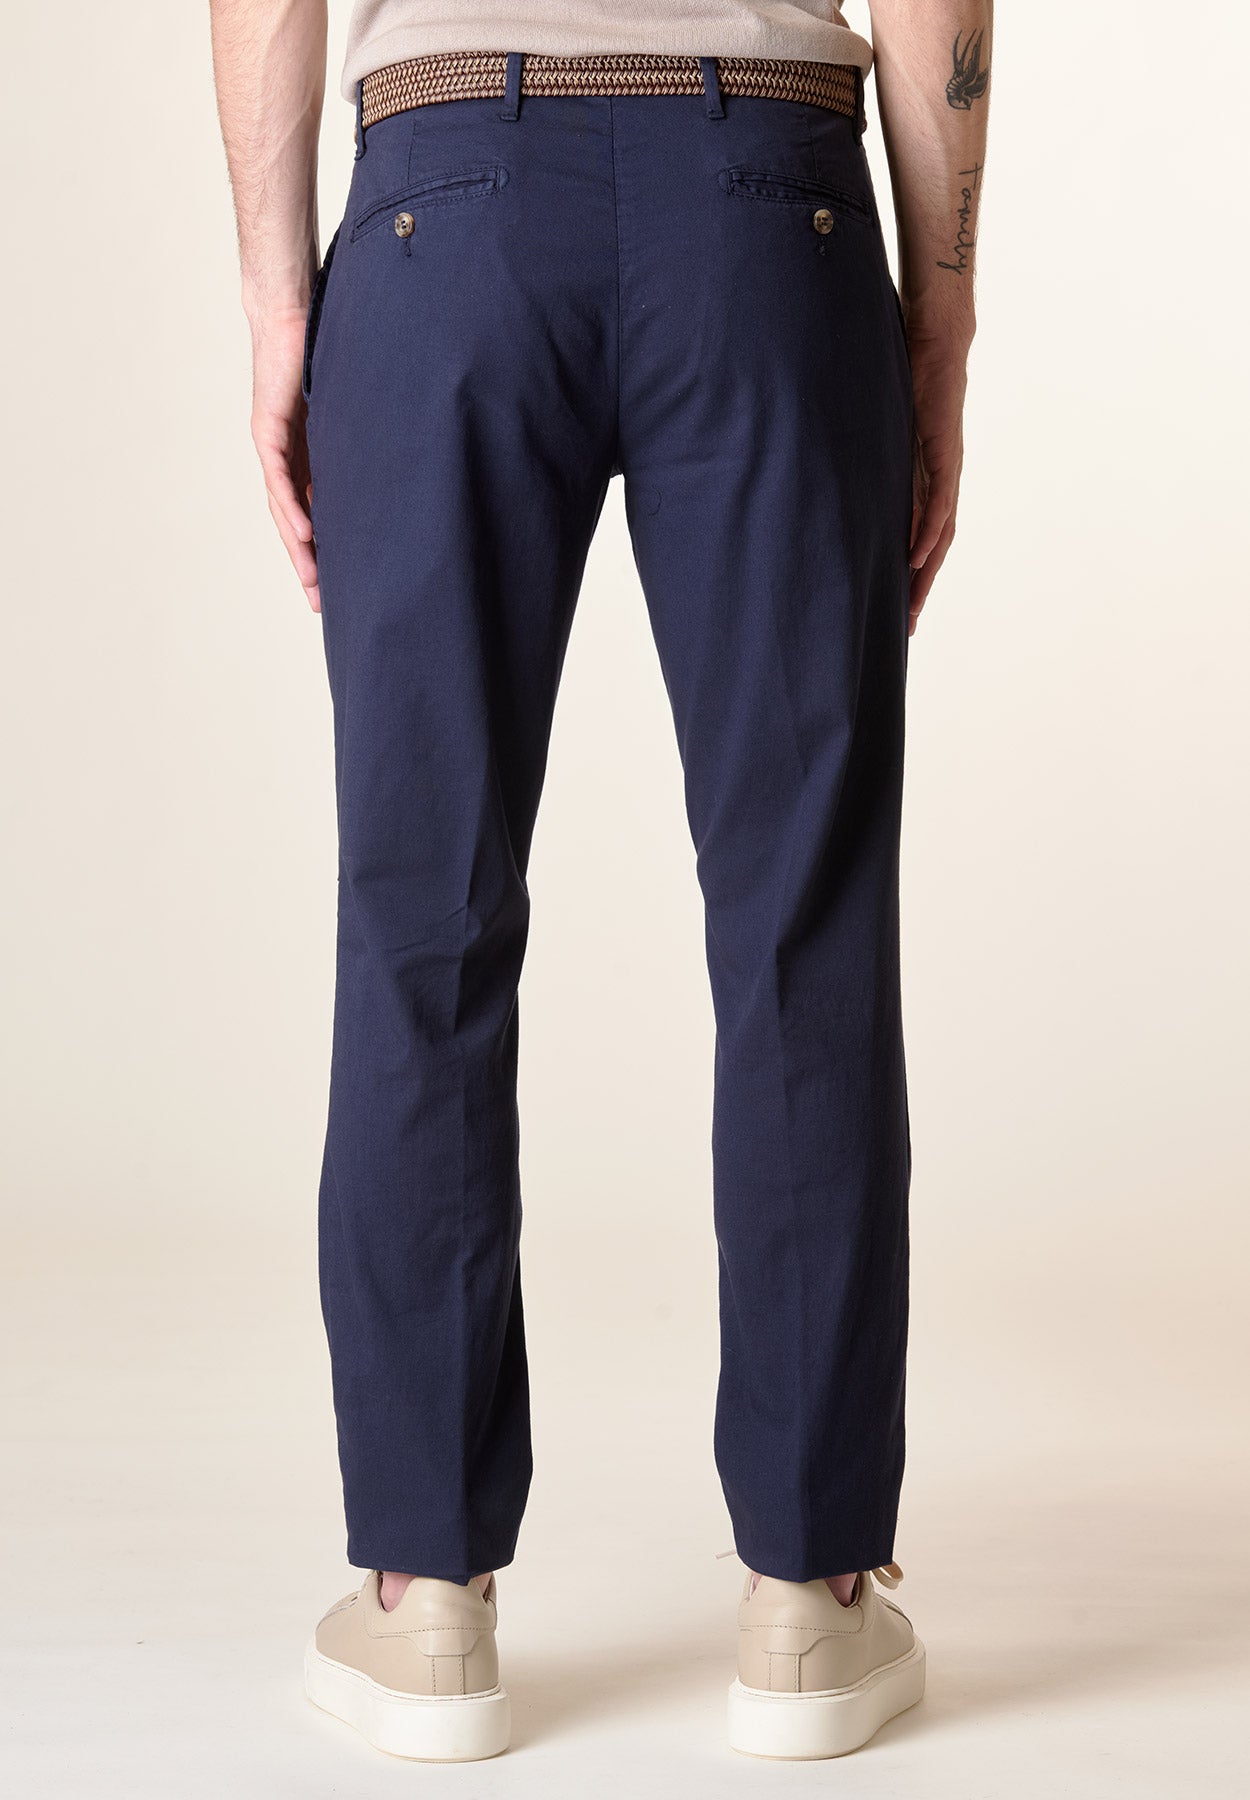 Pantalone blu cotone stretch regular fit